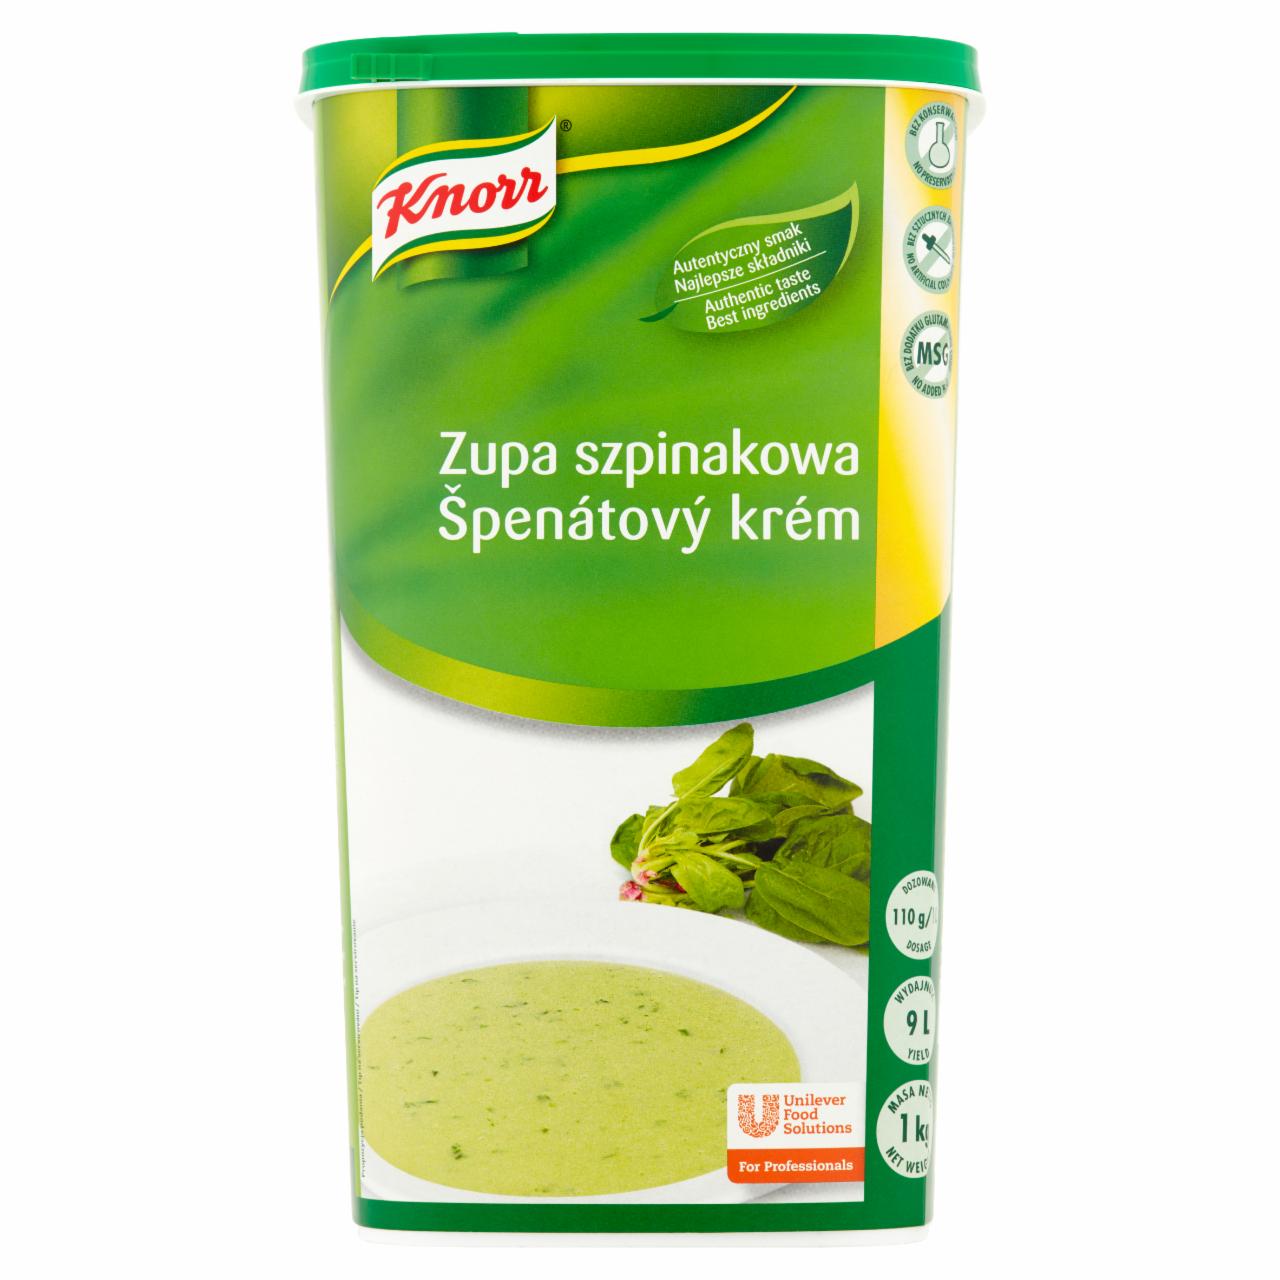 Zdjęcia - Knorr Zupa szpinakowa 1 kg